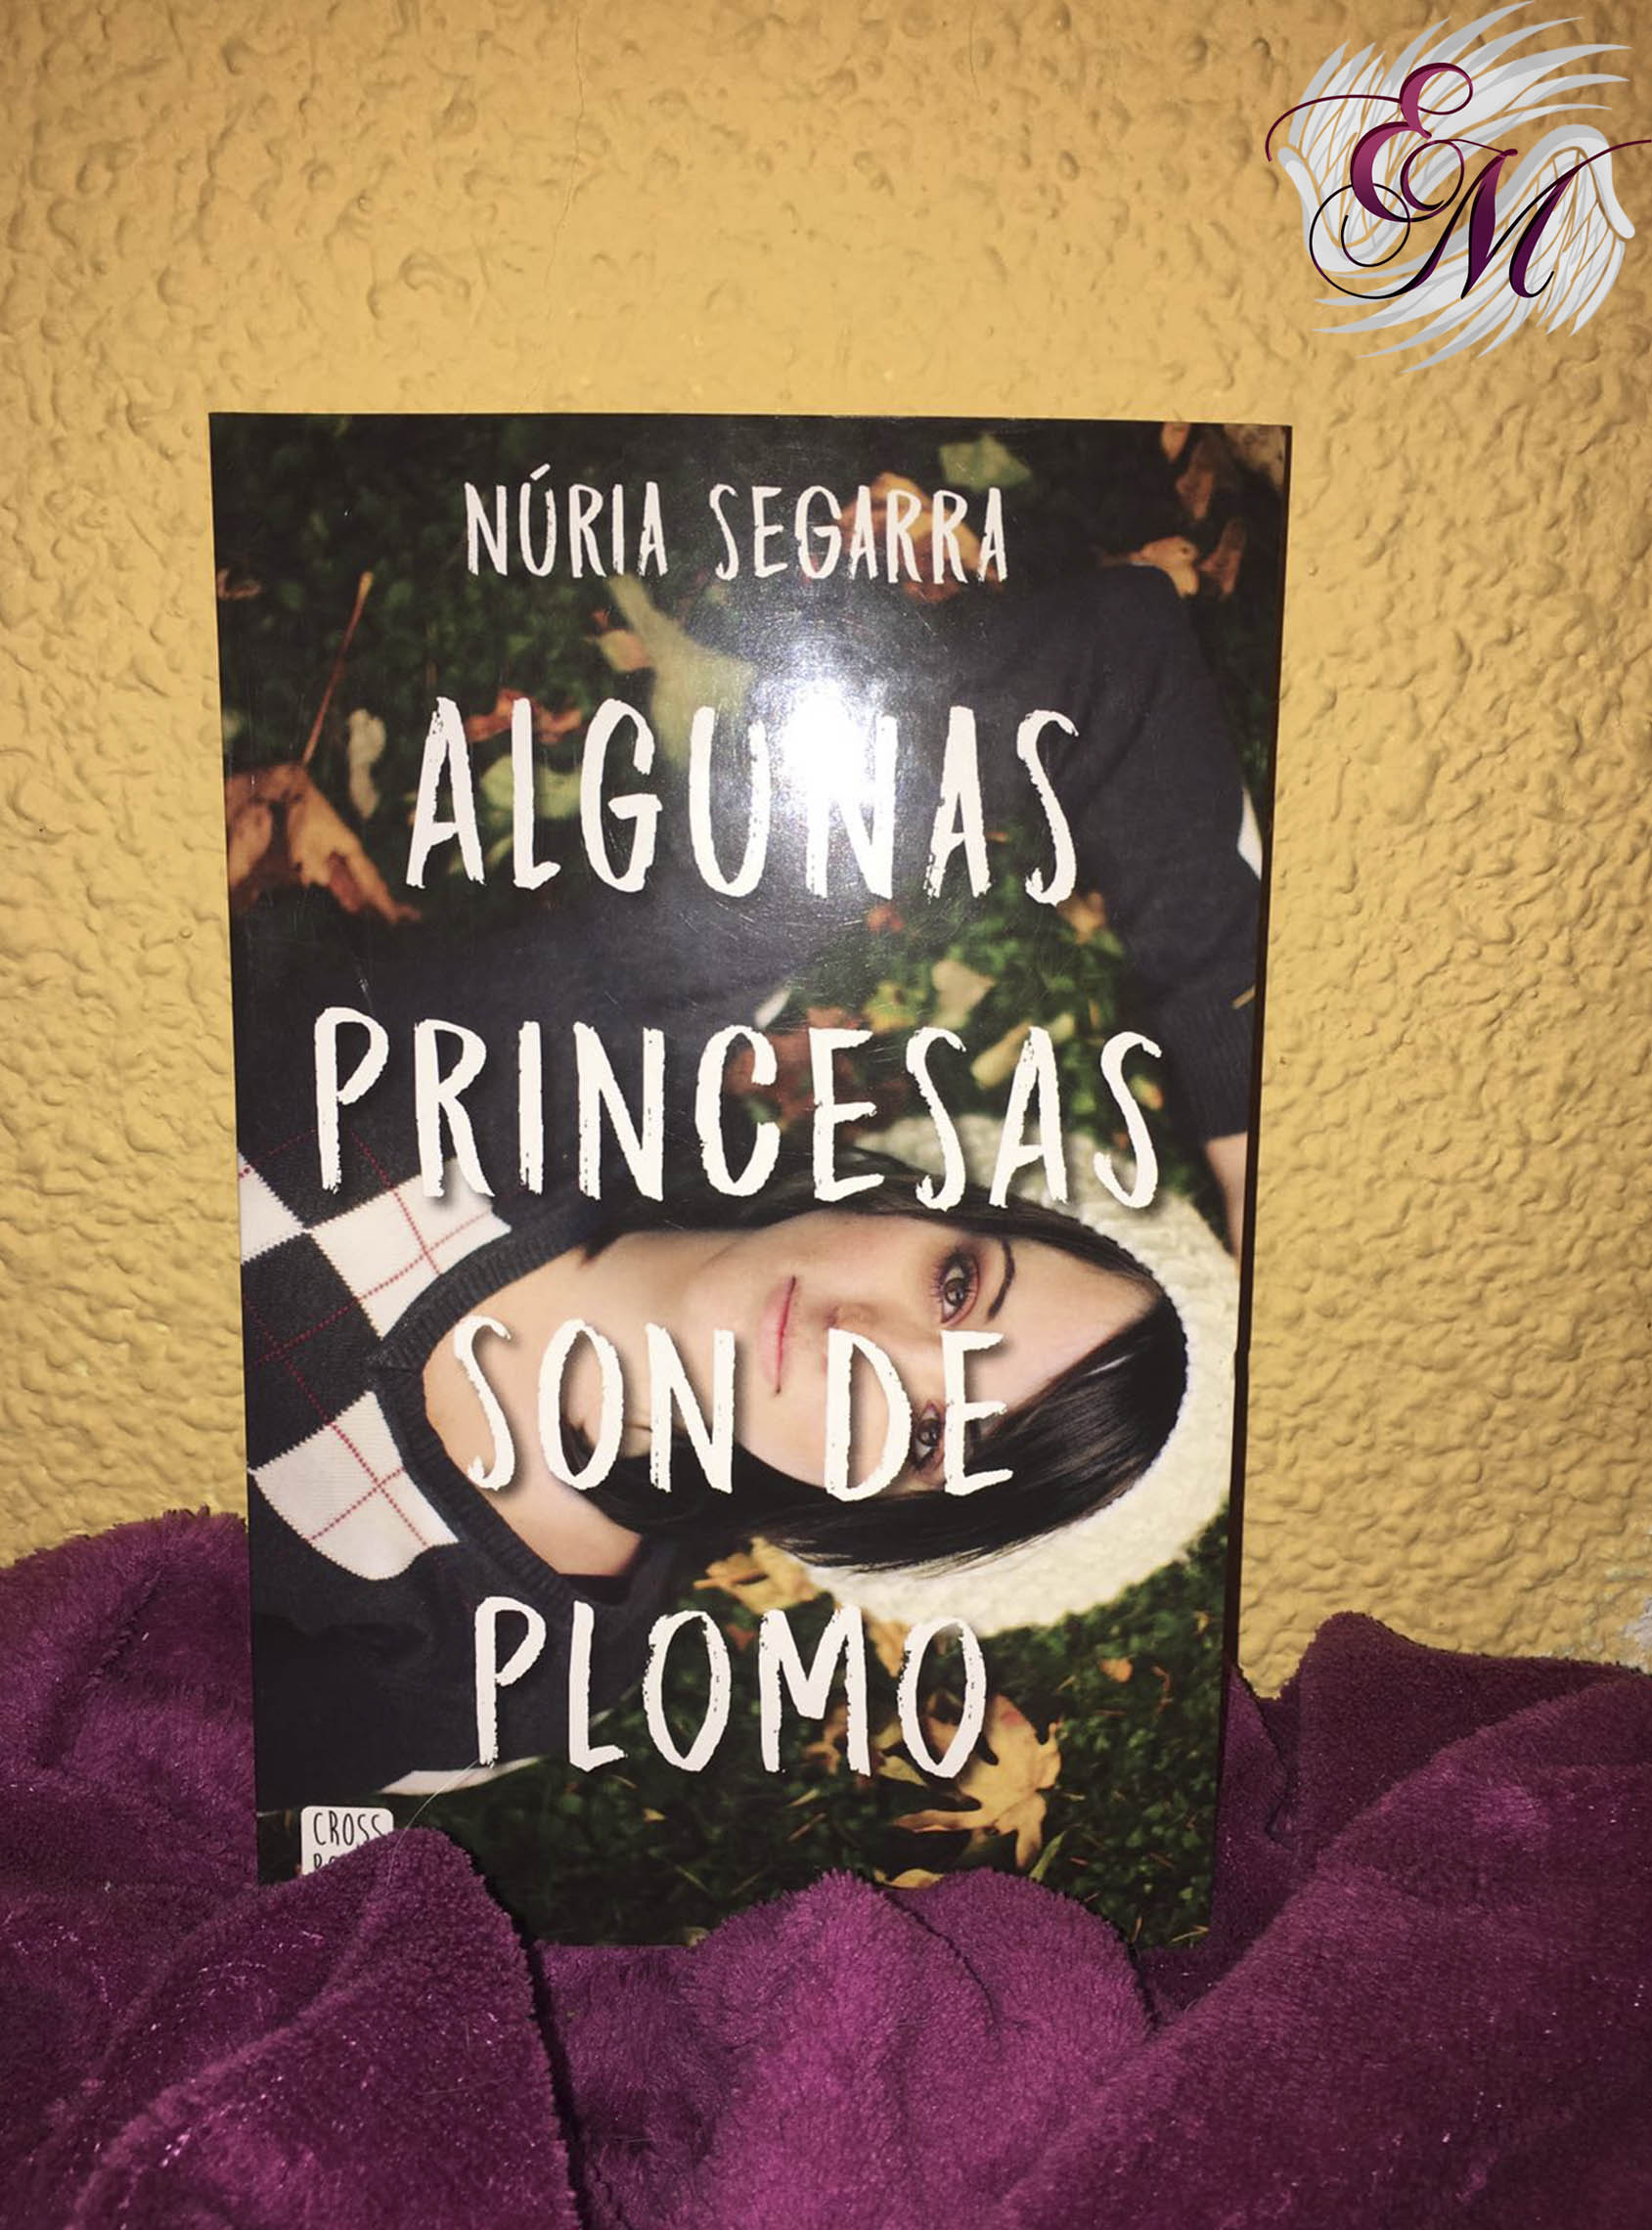 Algunas princesas son de plomo, de Núria Segarra - Reseña